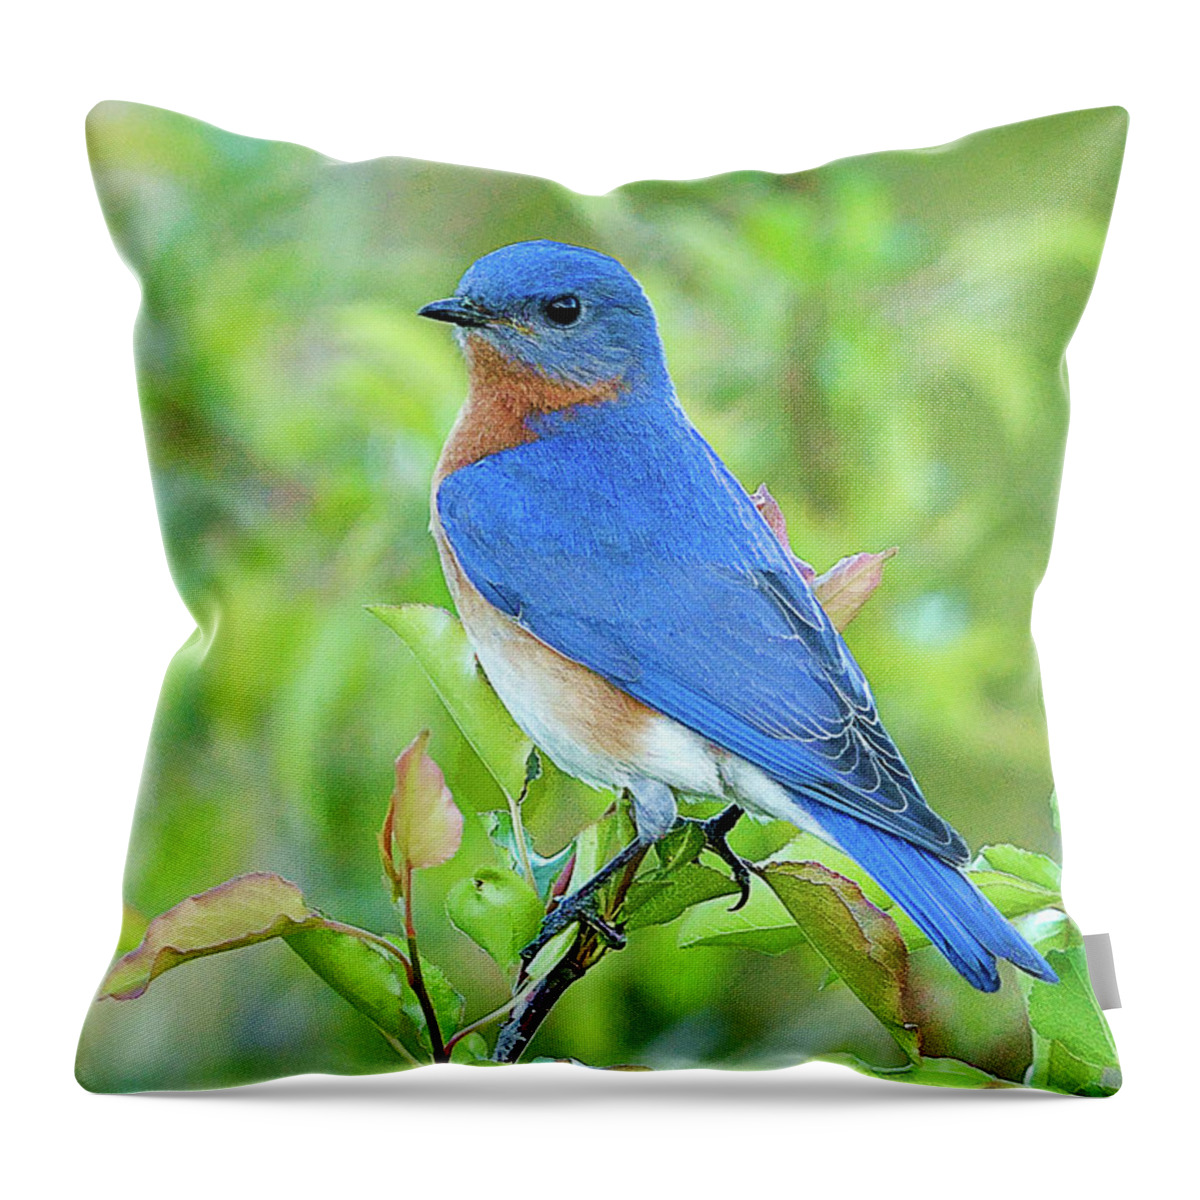 Bluebird Throw Pillow featuring the photograph Bluebird Joy #2 by William Jobes